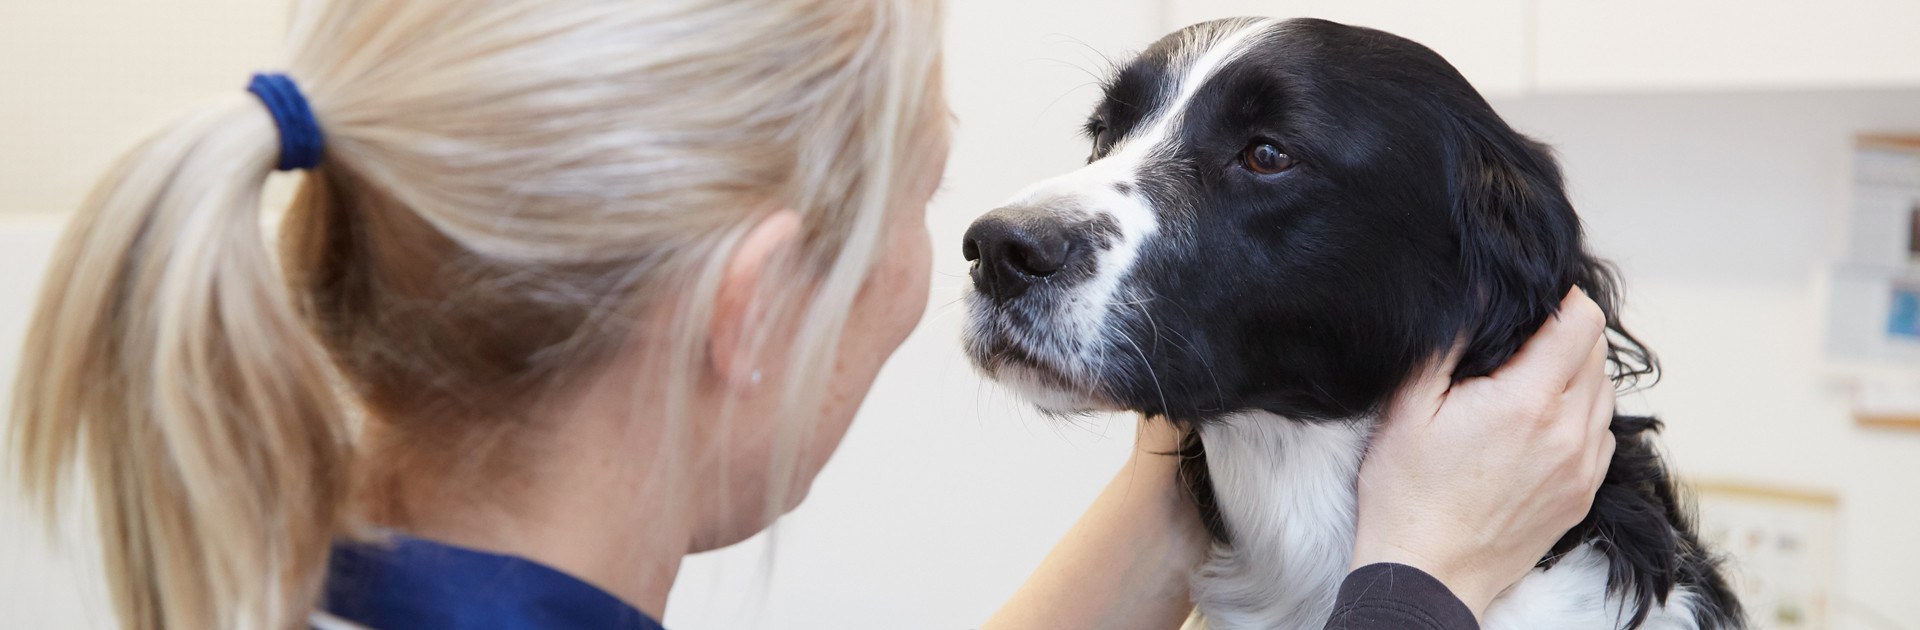 Springer spaniel cross dog with a vet